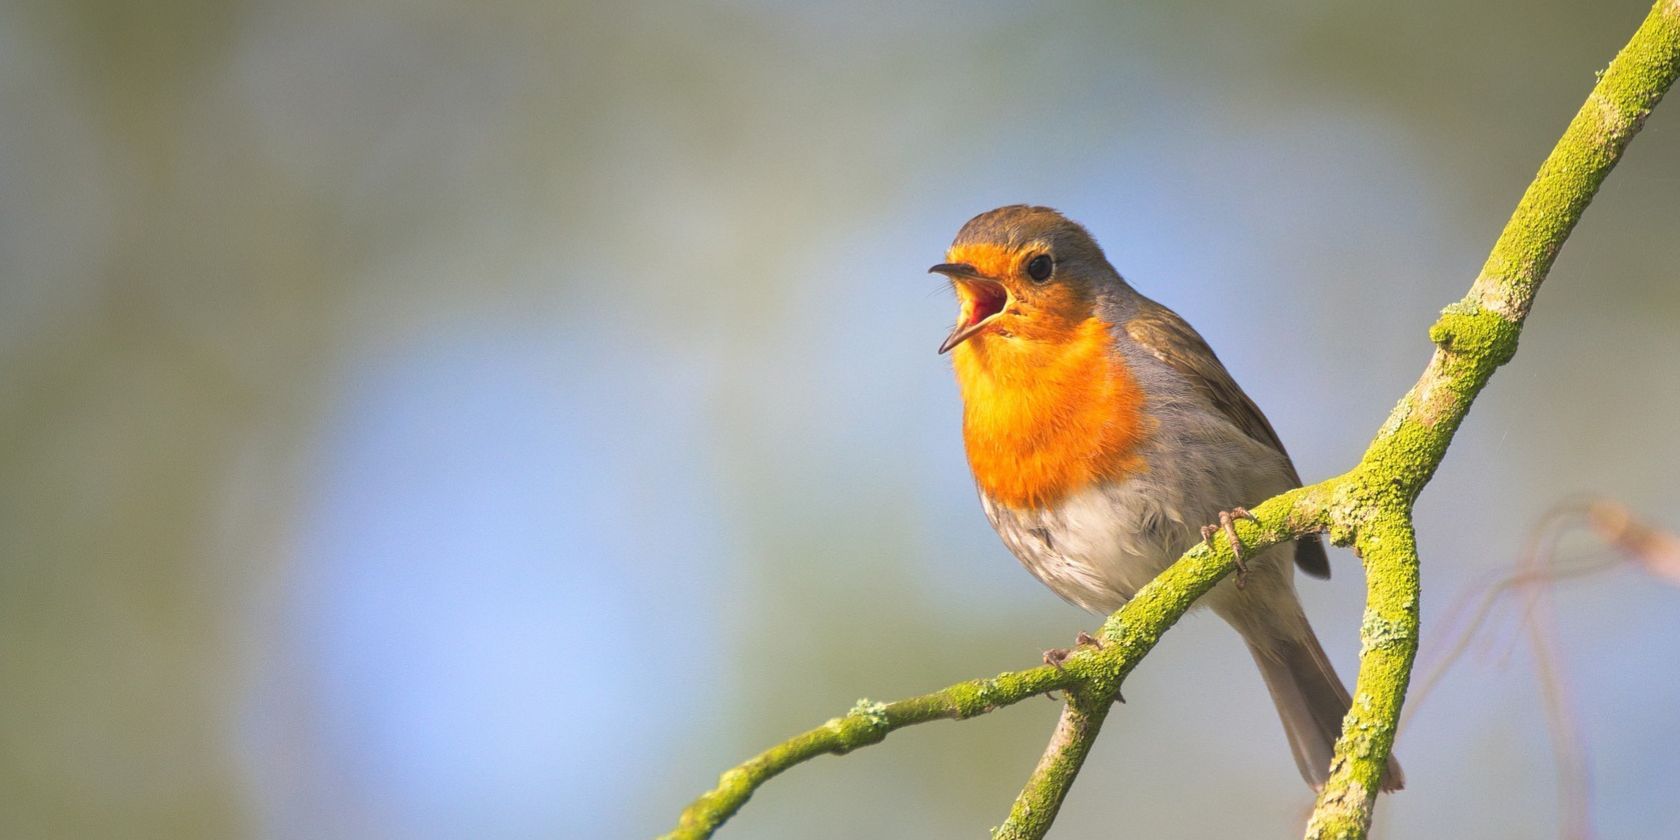 robin singing on branch